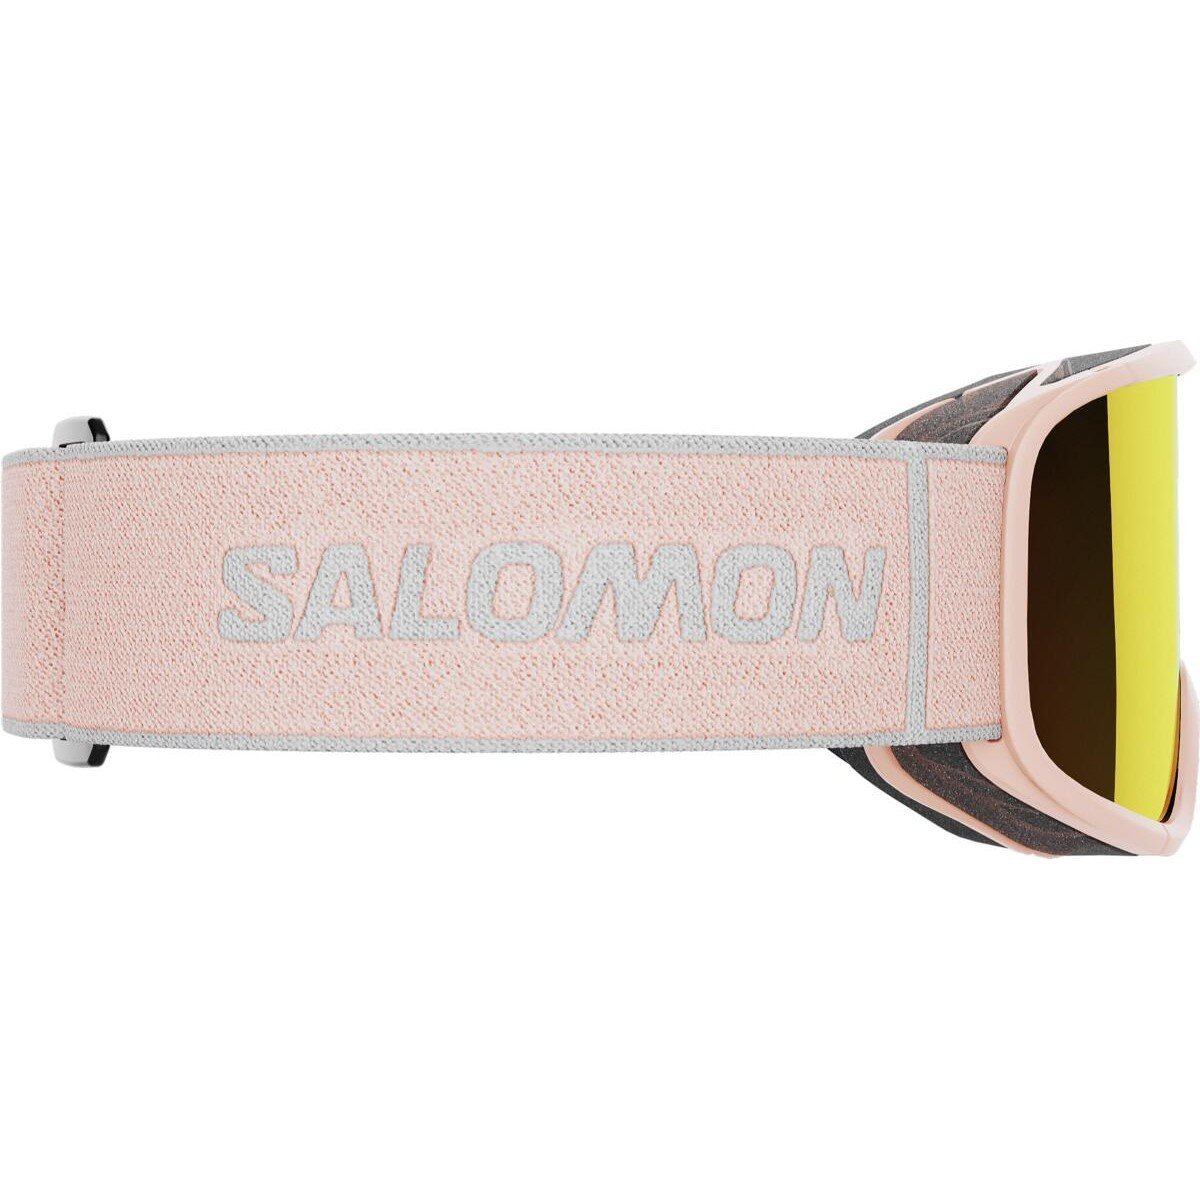 Гірськолижні окуляри Salomon Aksium 2.0 S - рожеві